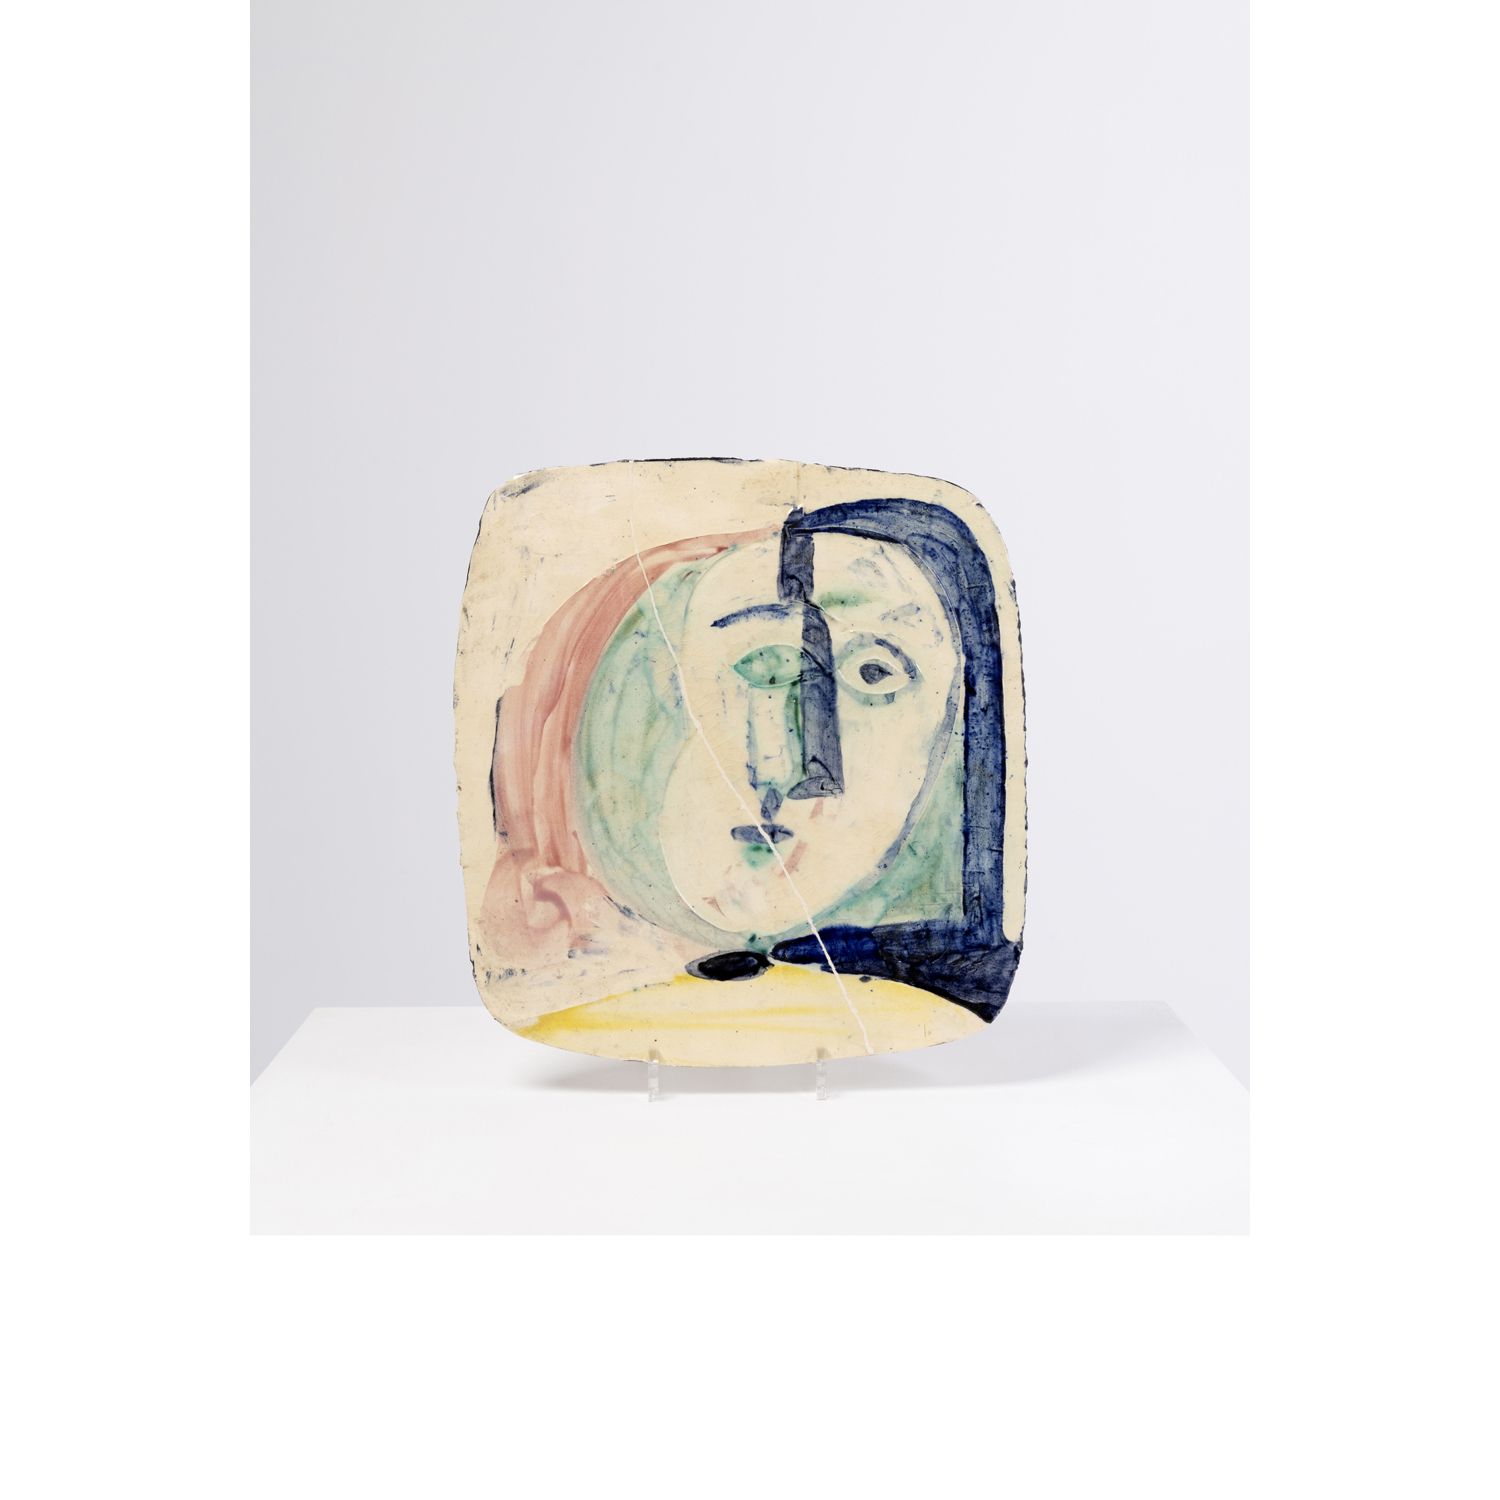 Ƒ Pablo Picasso (1881-1973) Visage de femme ƒ 巴勃罗-毕加索 (1881-1973)

一个女人的脸

部分上釉的&hellip;